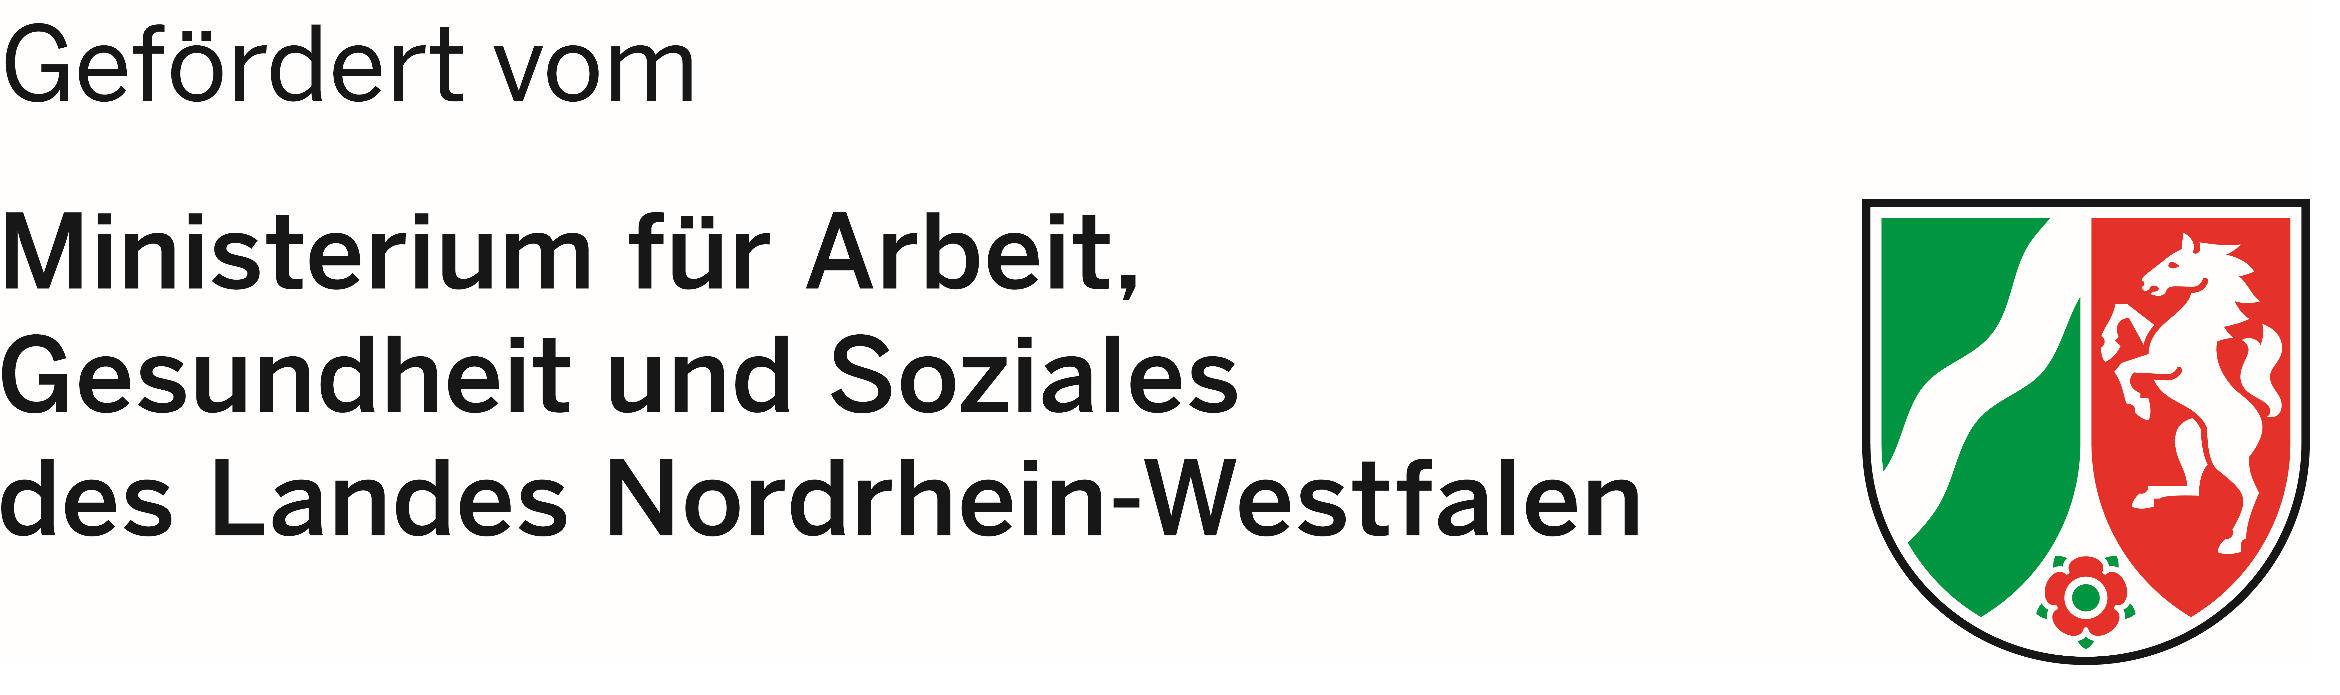 Logo Ministerium Arbeit, Gesundheit und Soziales des Landes NRW